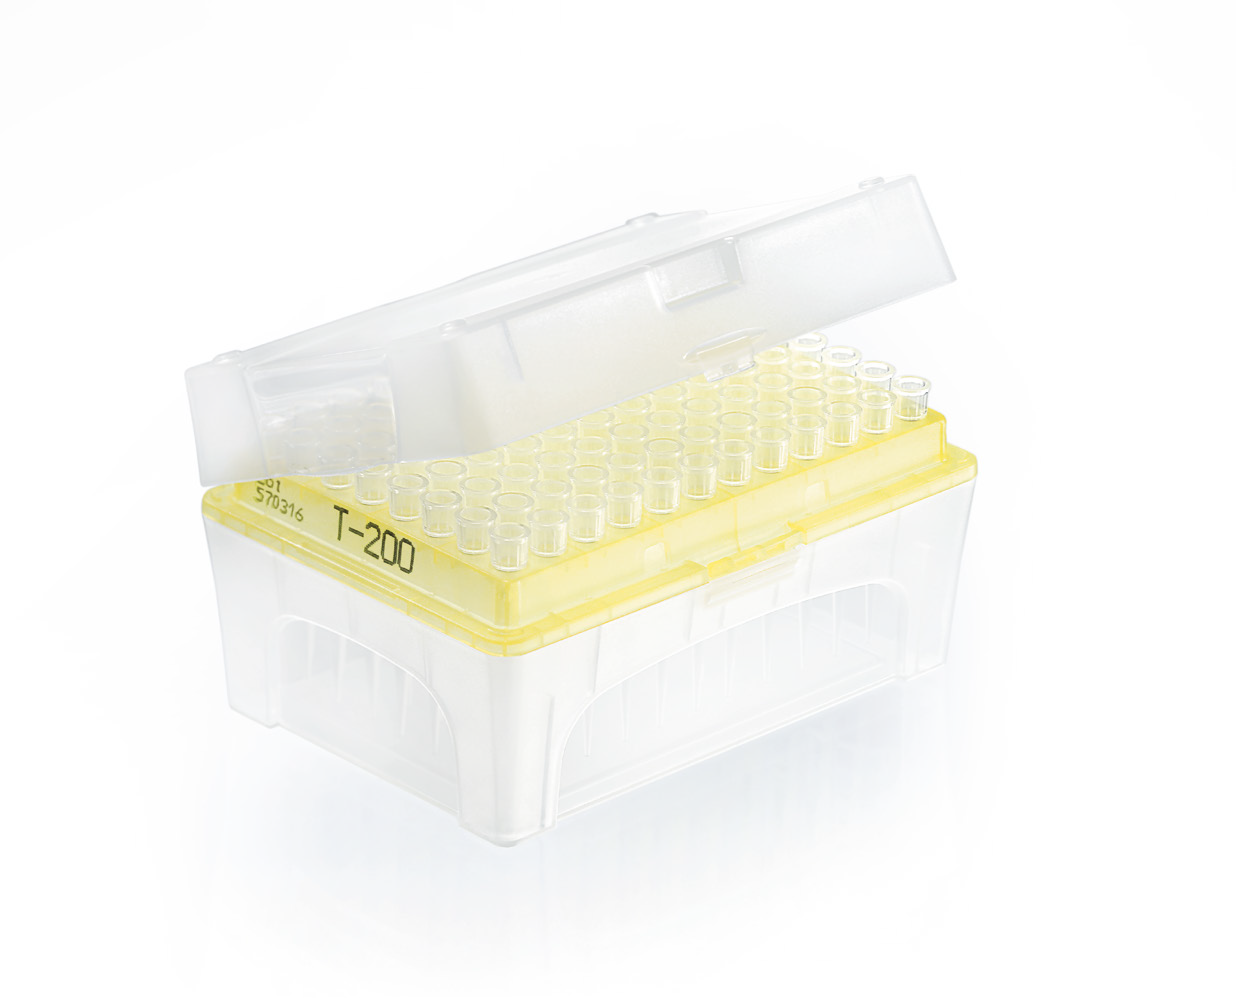 Filter tips ULR rack DNA-/RNase-free IVD TipBox 1,0 - 20 μl, PCK=480